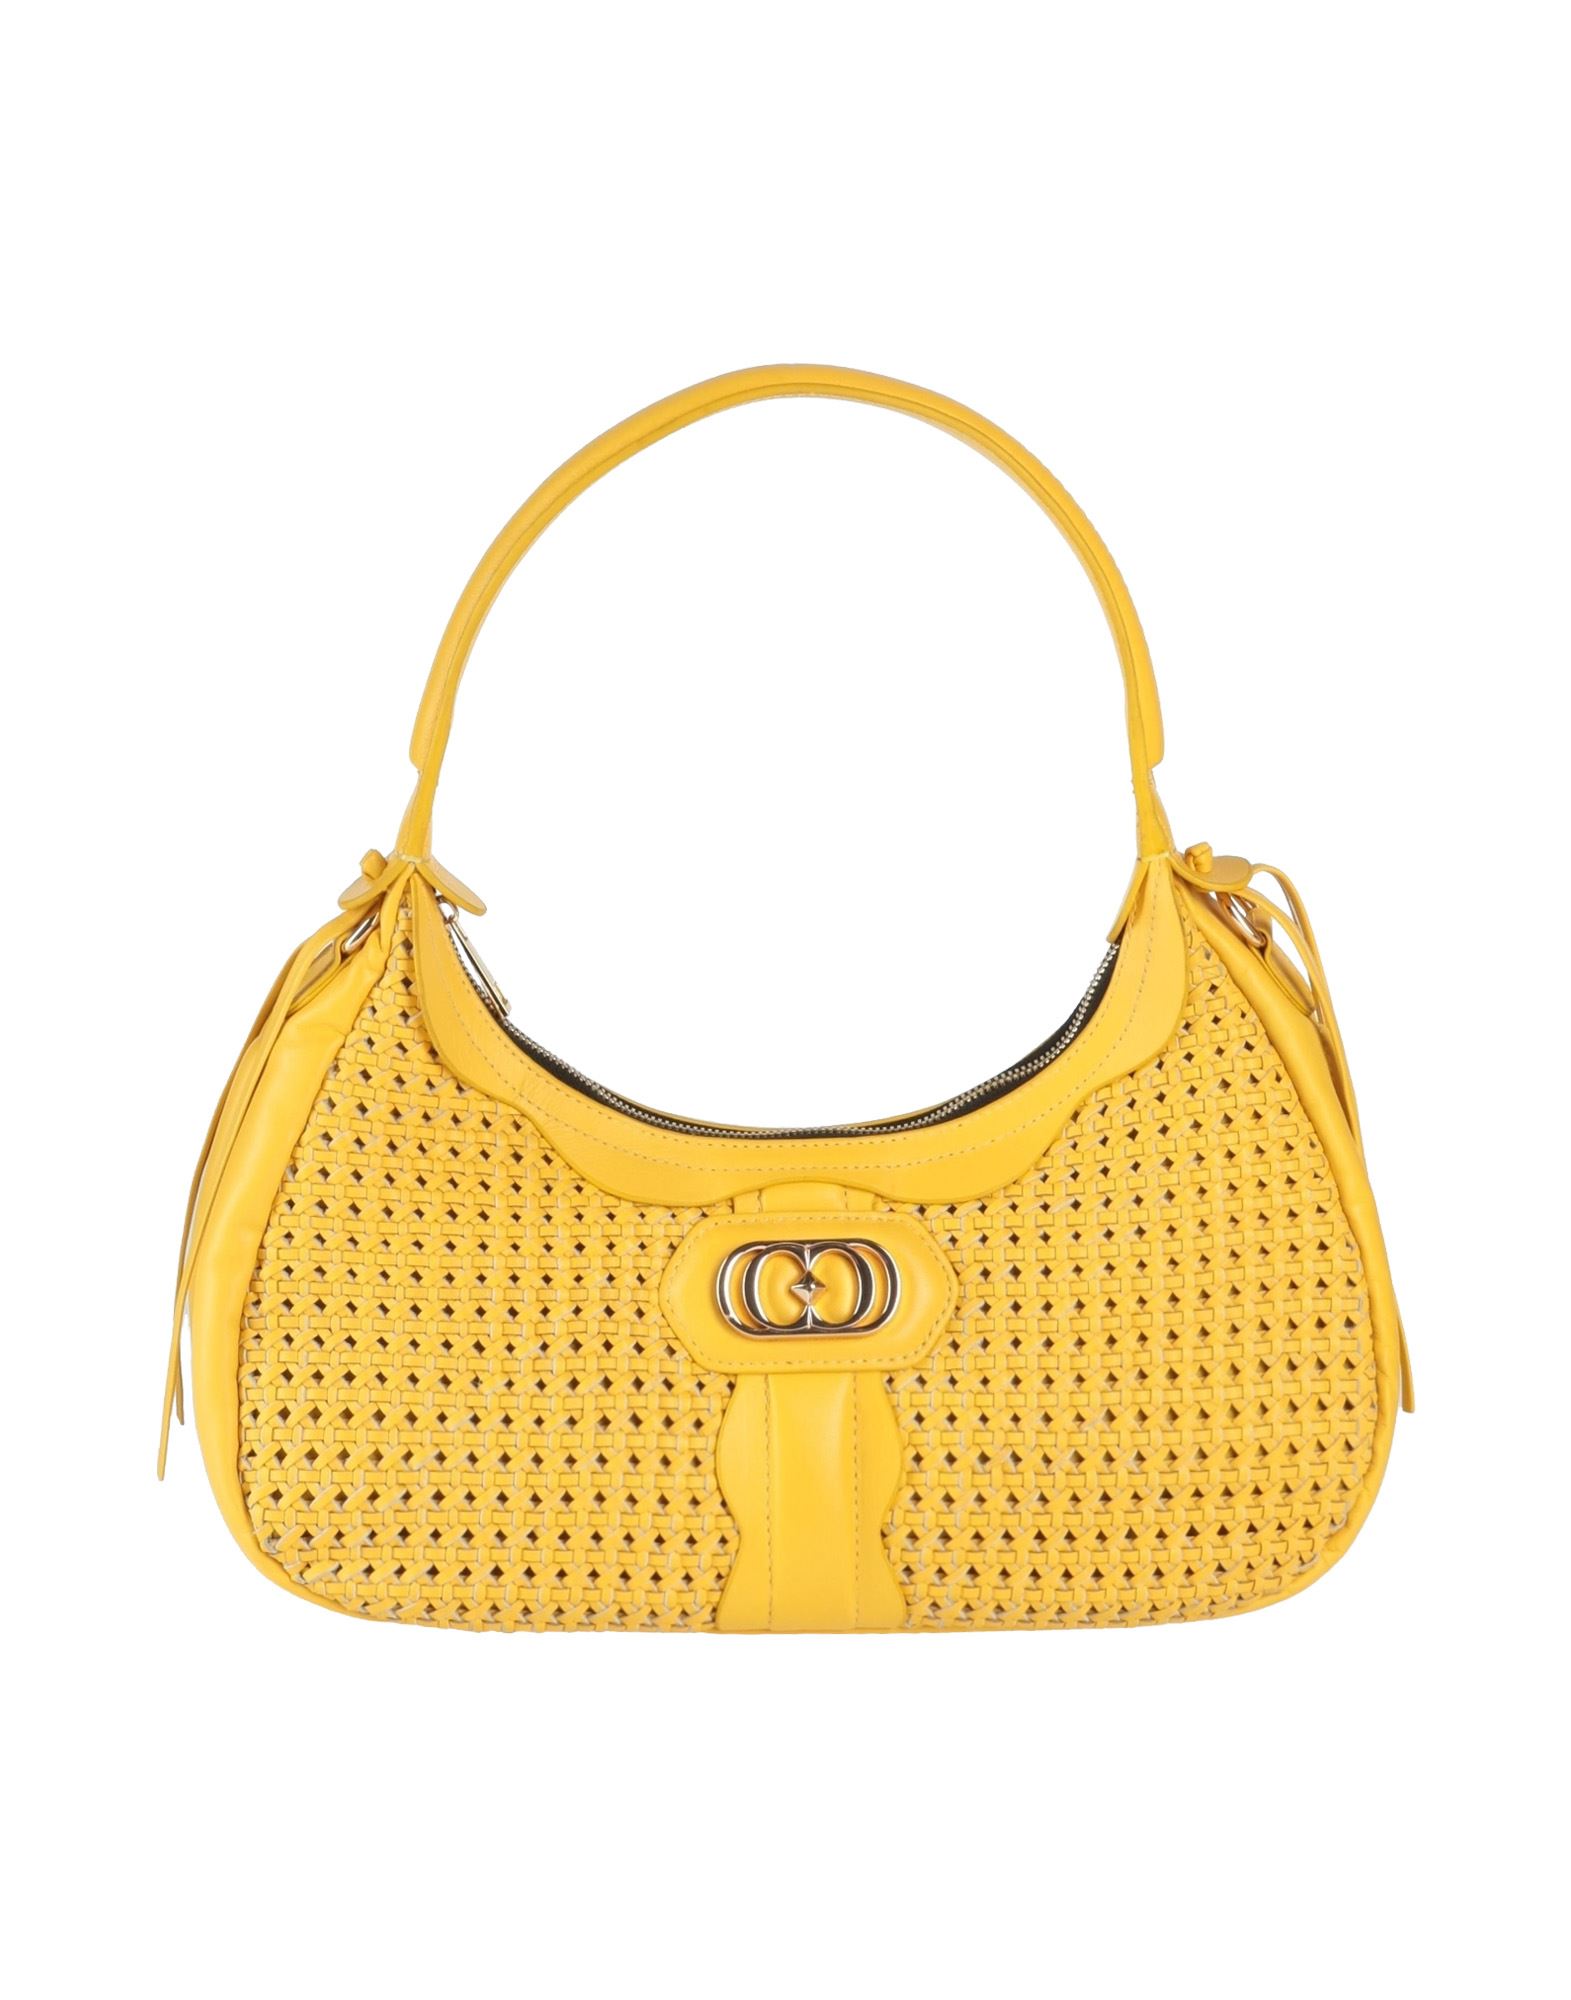 La Carrie Handbags In Yellow